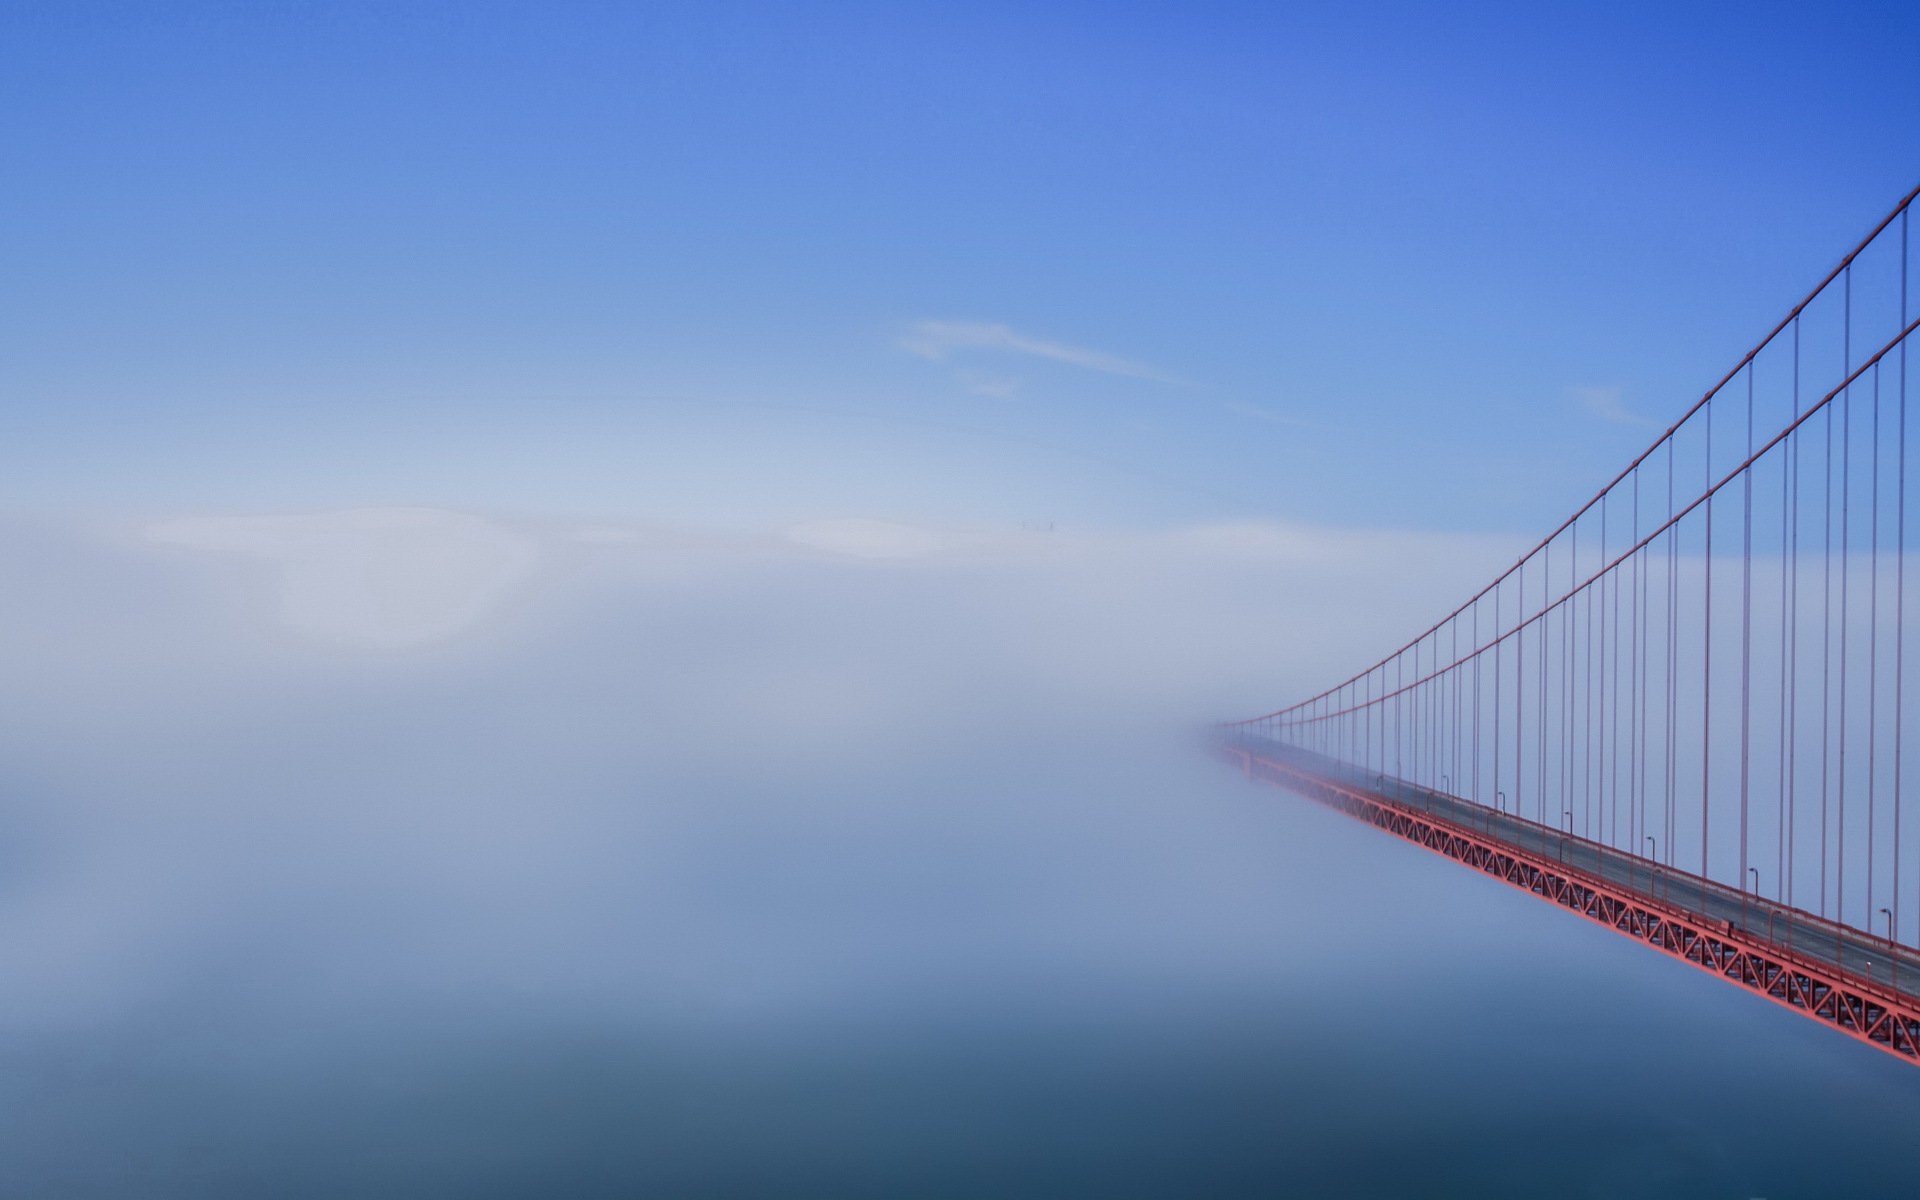 Мост в тумане скачать